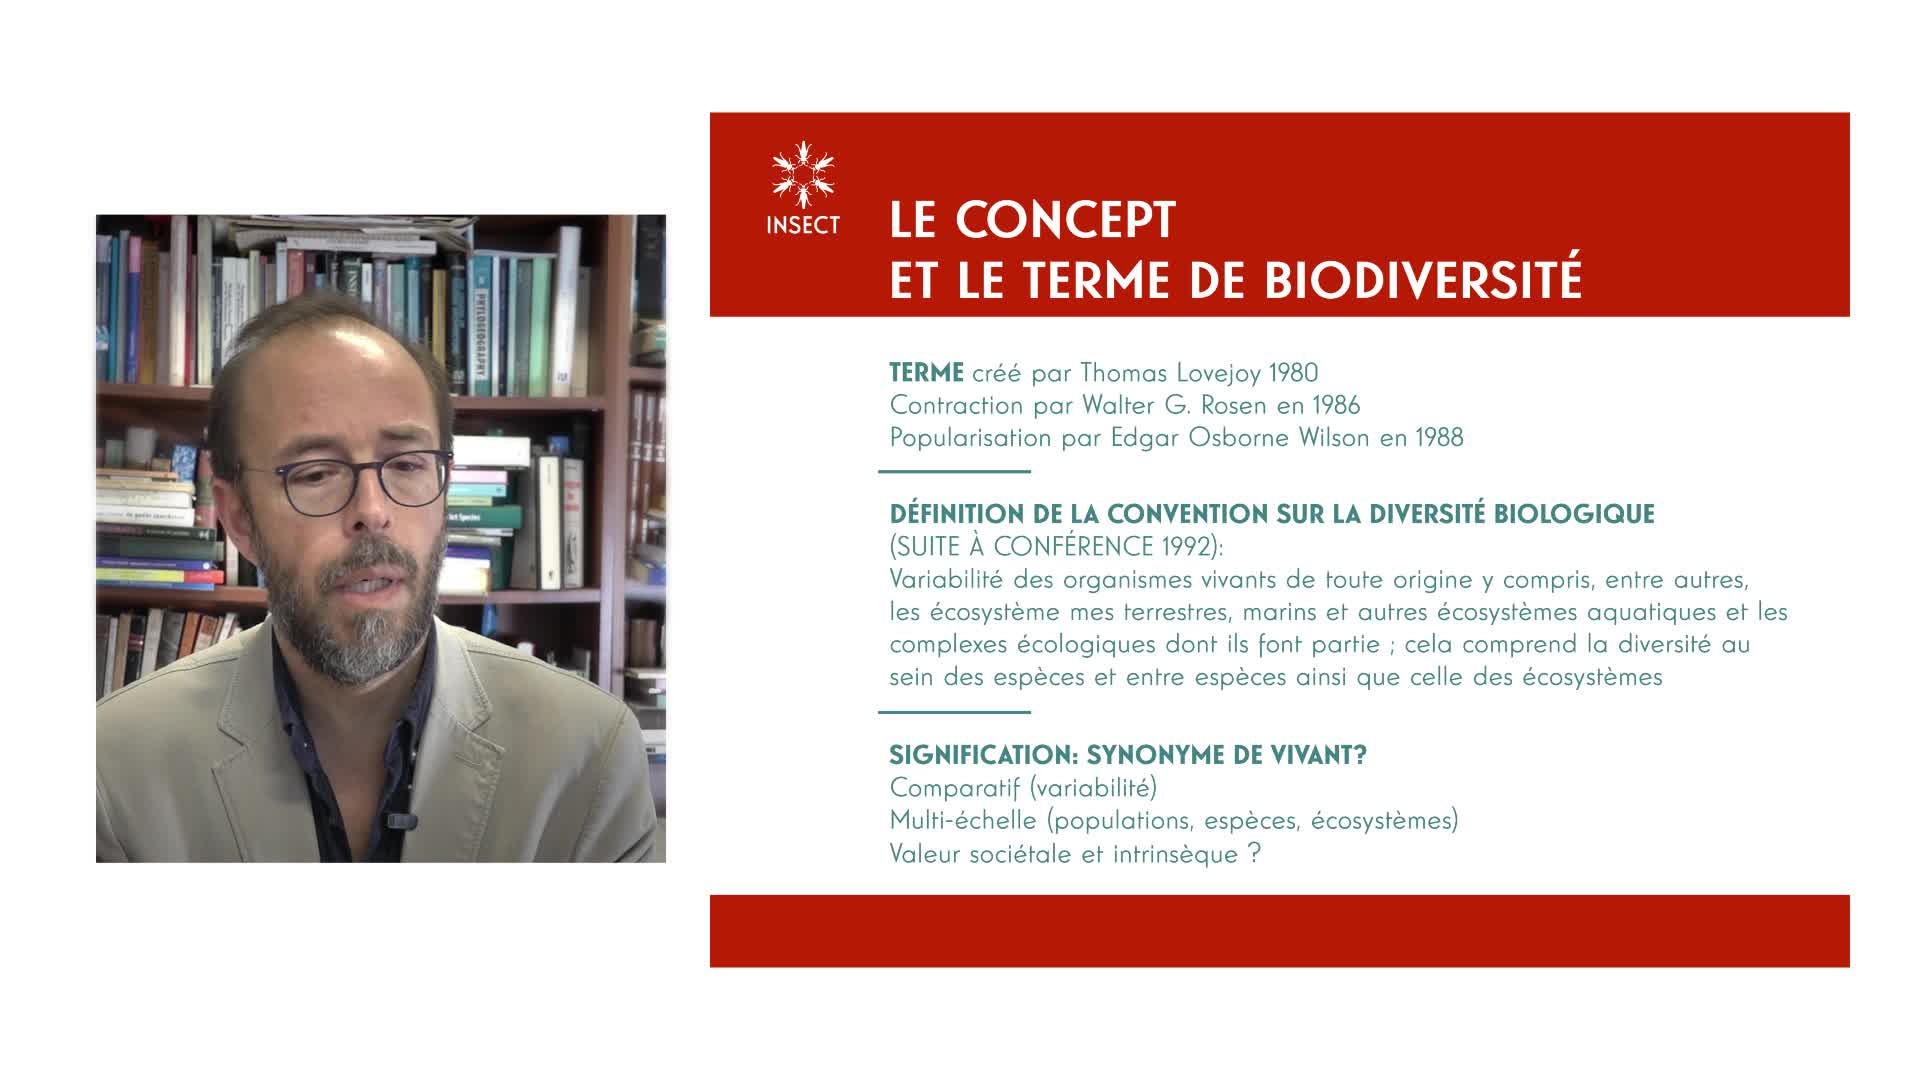 INSECT - La biodiversité: omniprésente, dynamique et interactive